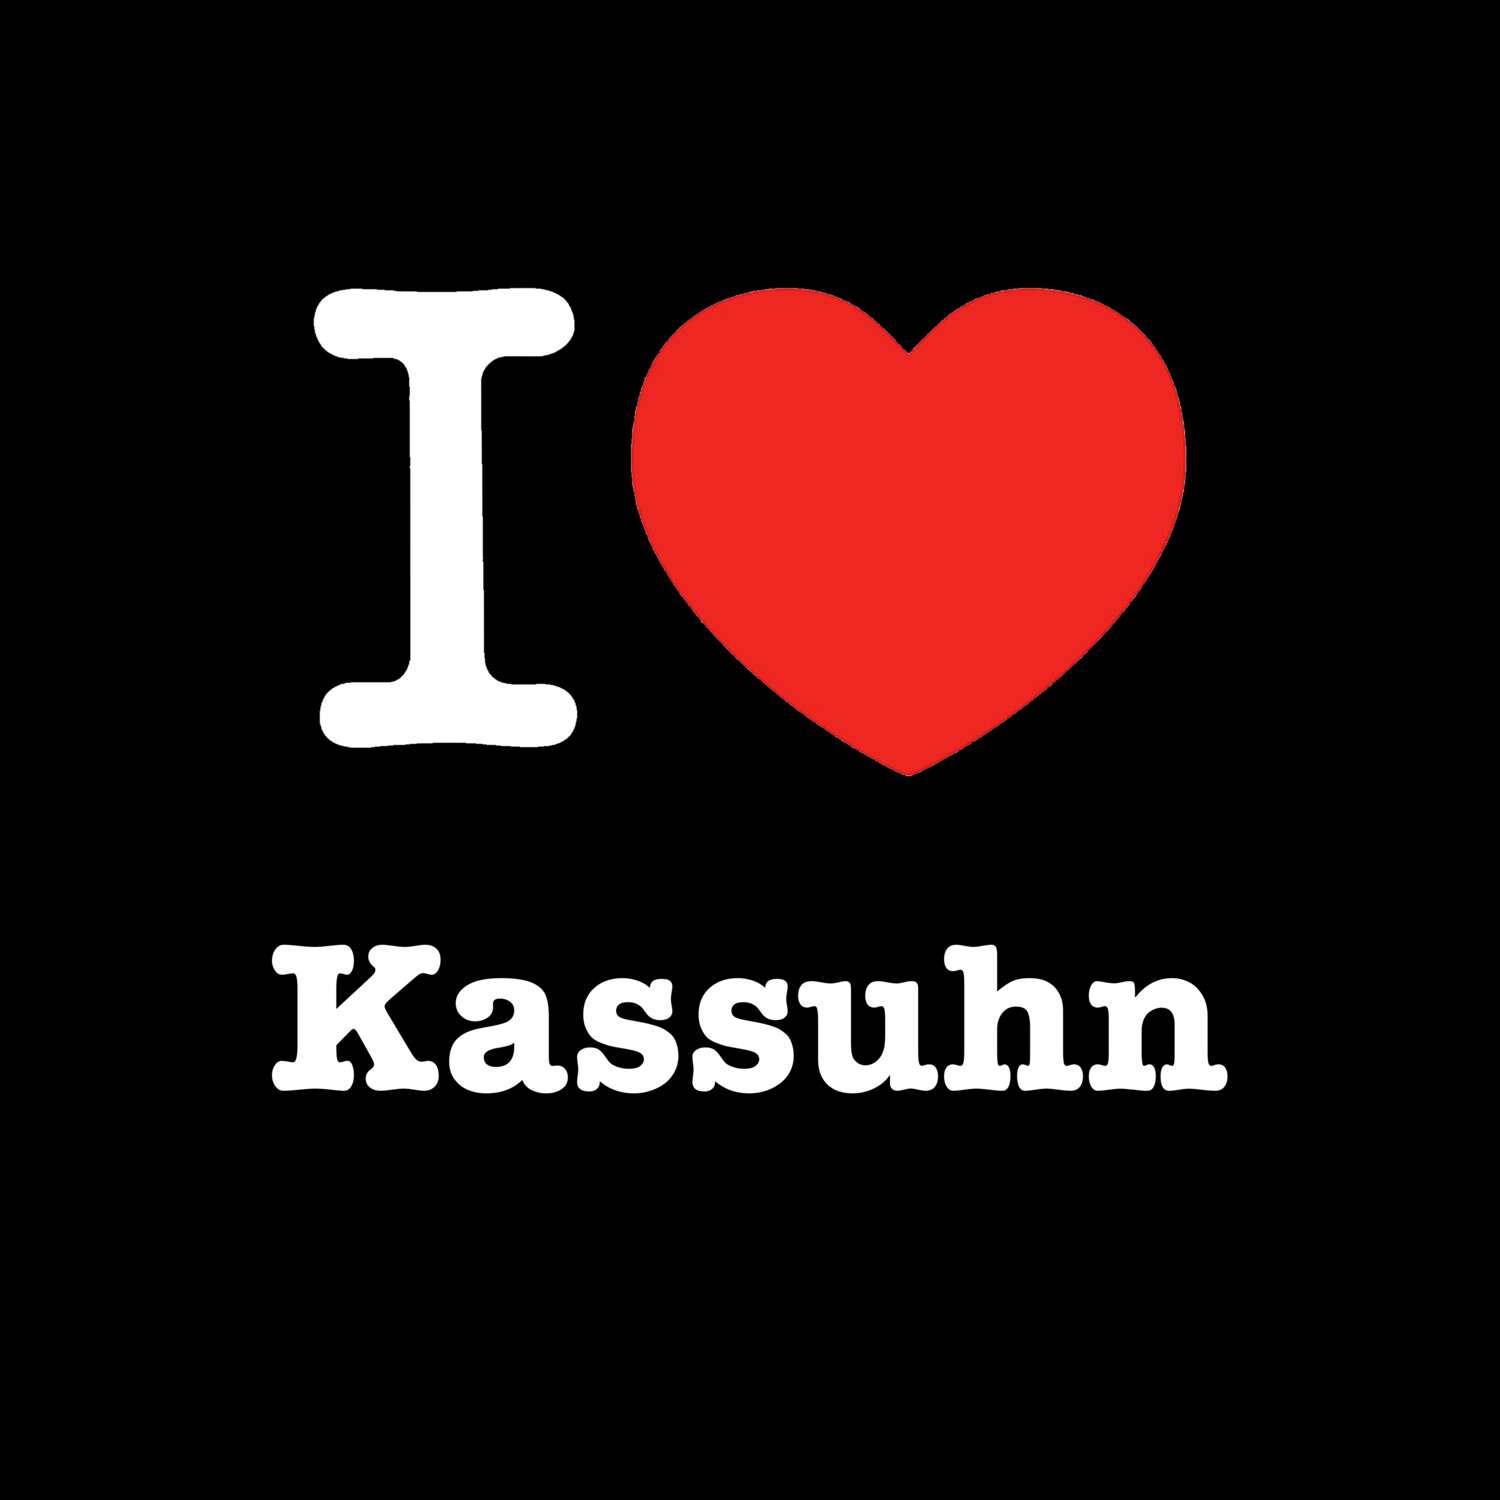 Kassuhn T-Shirt »I love«